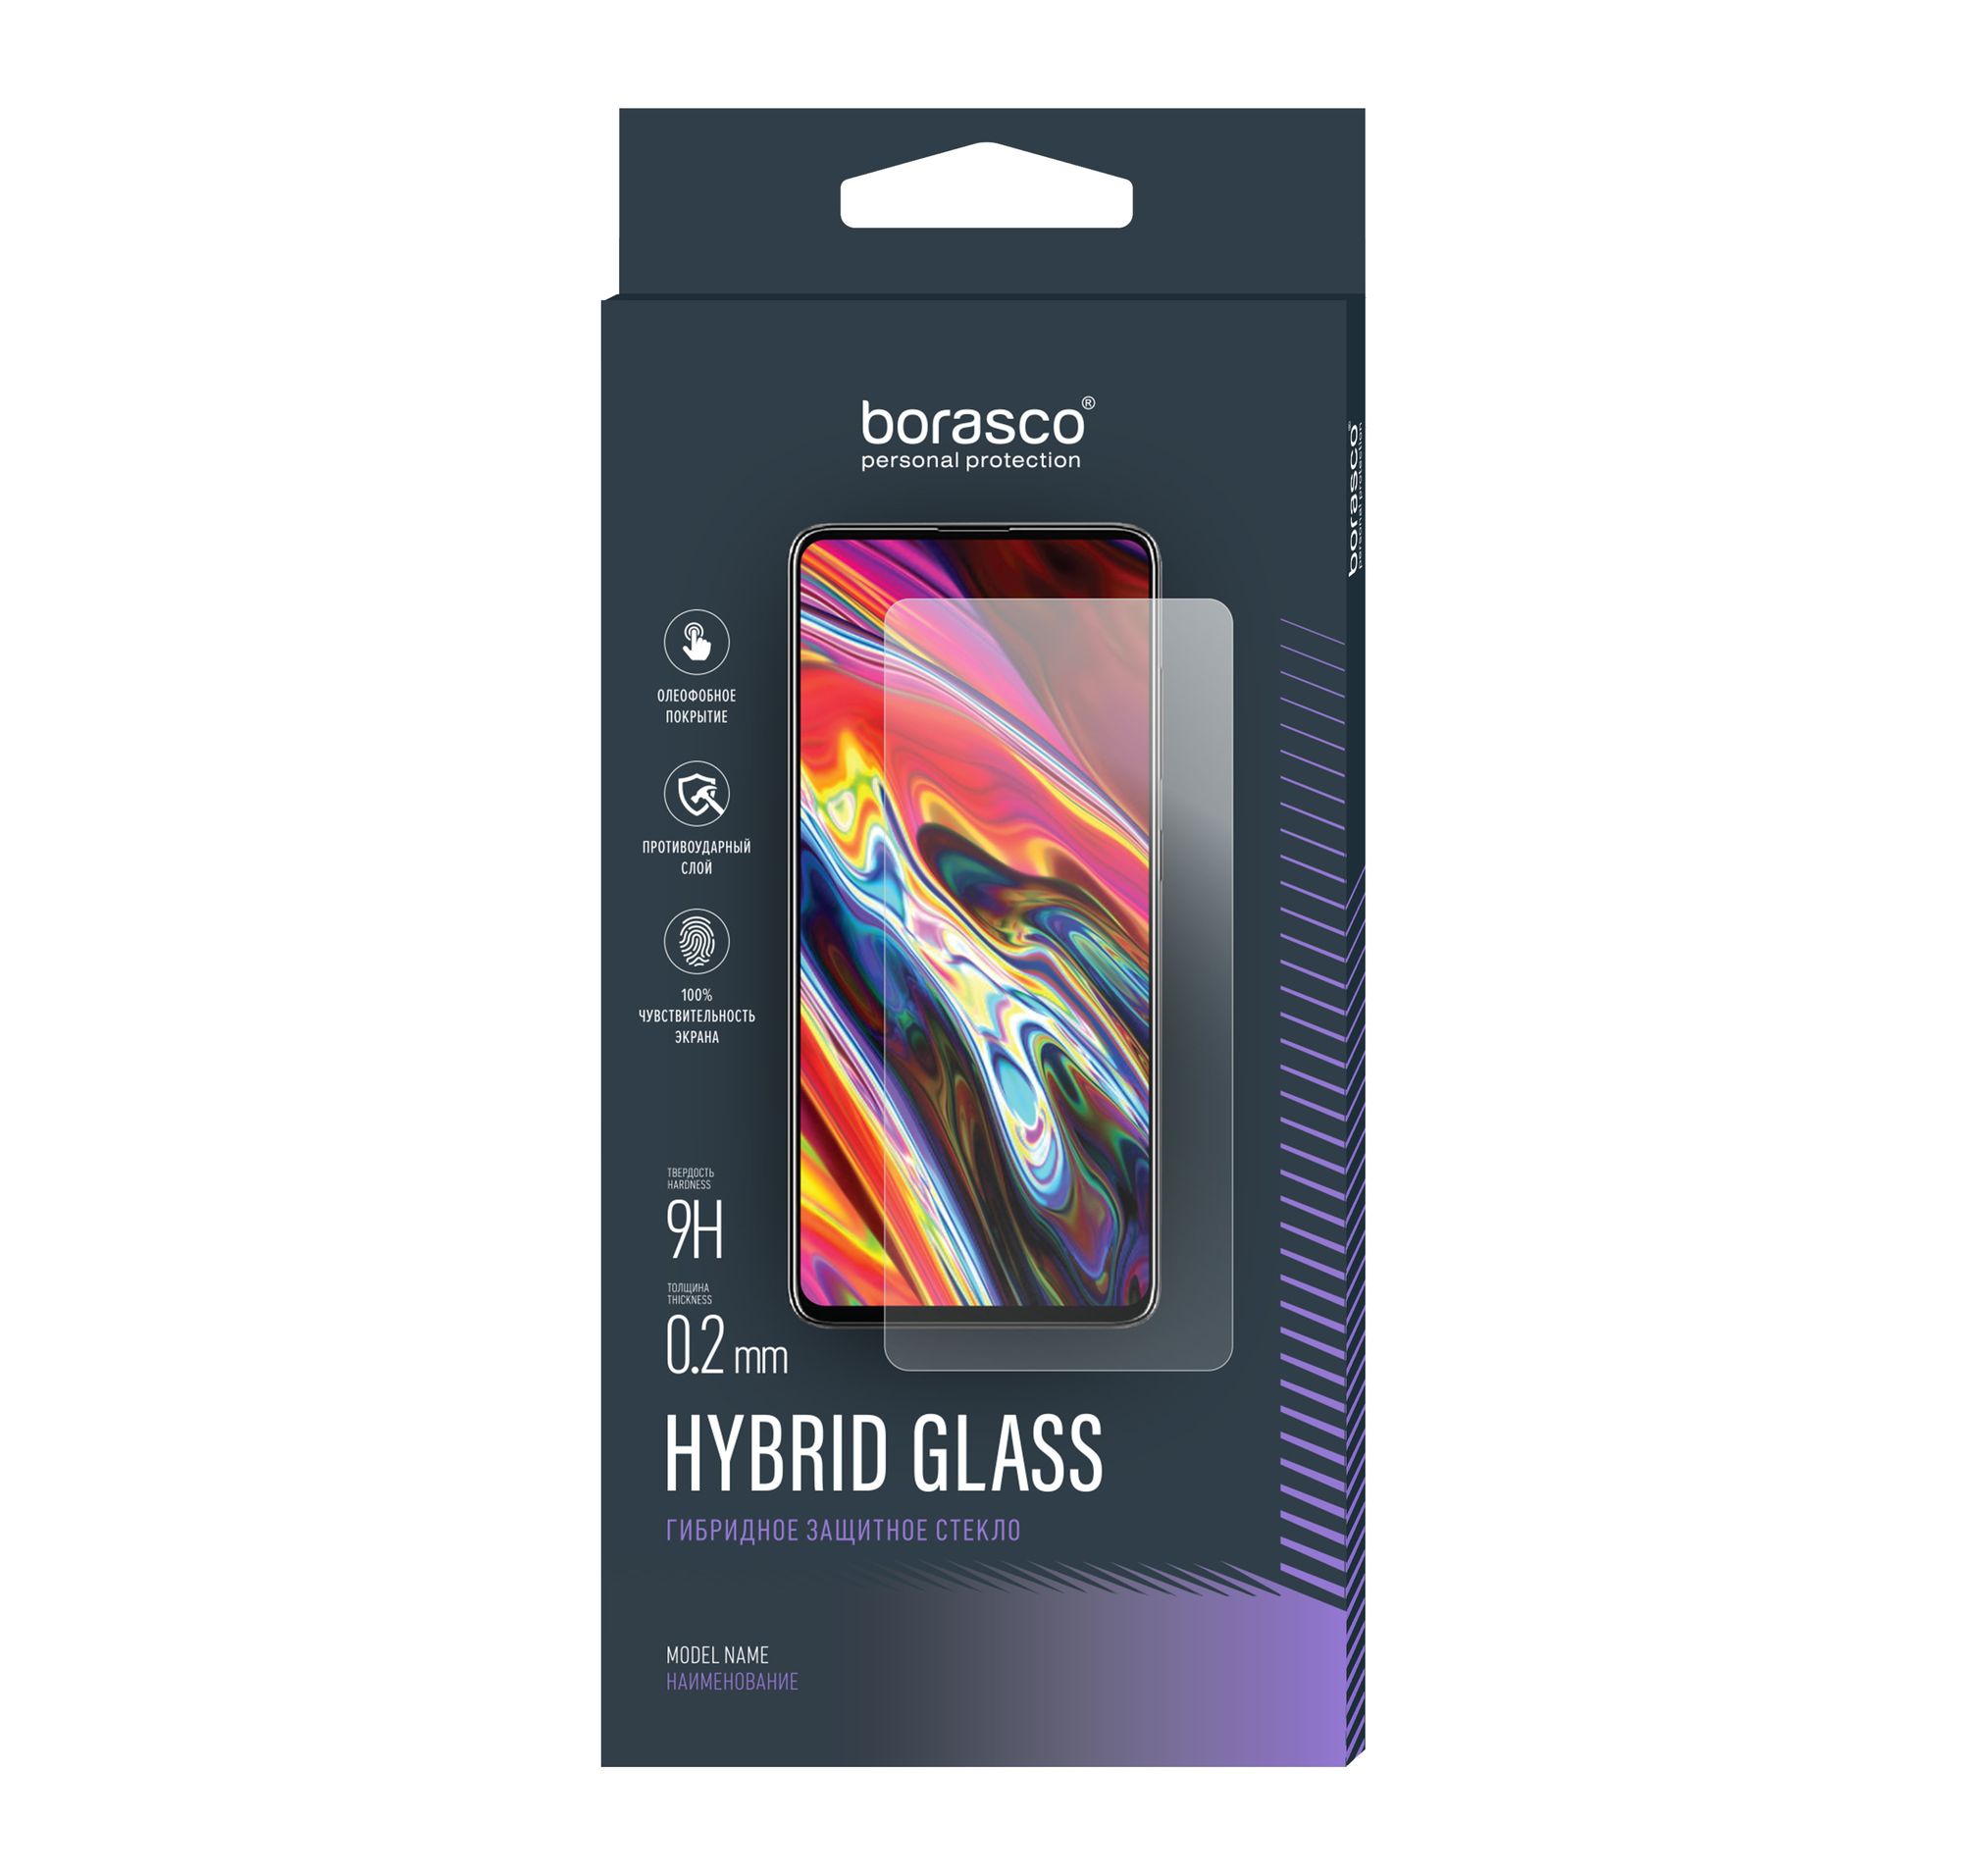 Стекло защитное Hybrid Glass VSP 0,26 мм для Sony Xperia Z5 Premium 2 шт закаленное защитное стекло для смартфонов sony xperia z5 premium z4 z3 plus z2 компактная защита экрана для sony z1 z